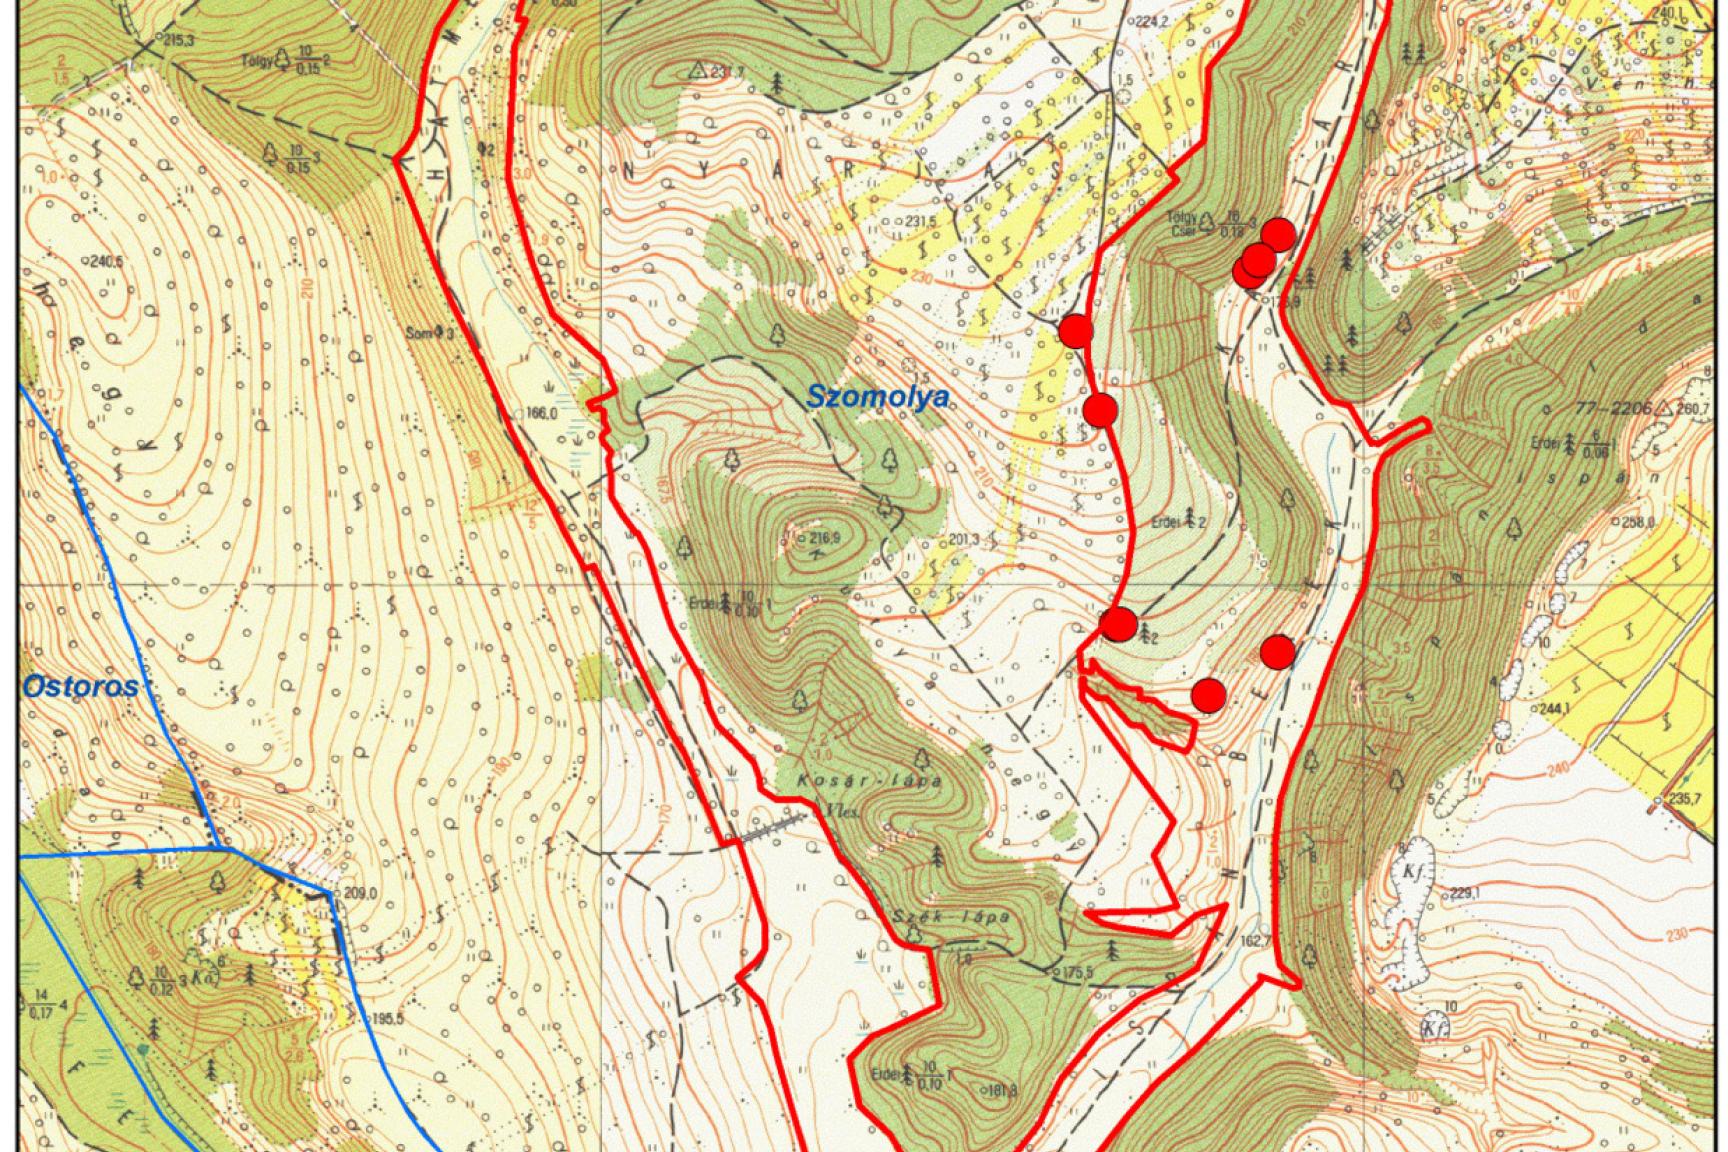 8. ábra: Közösségi jelentőségű növényfajok térképe I. (piros kígyószisz)